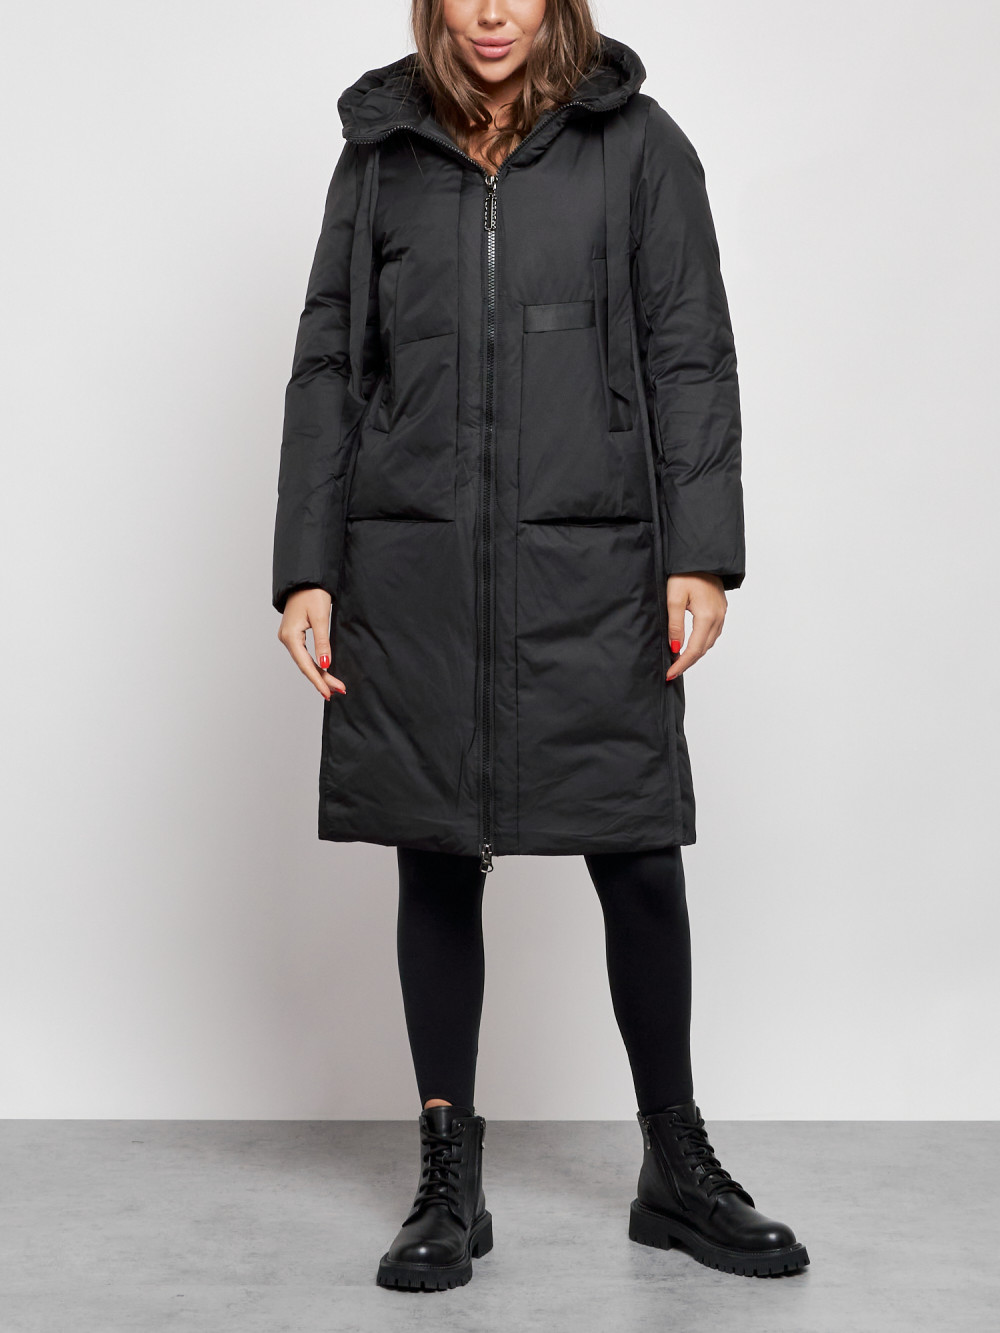 Пальто женское NoBrand AD52359 черное L